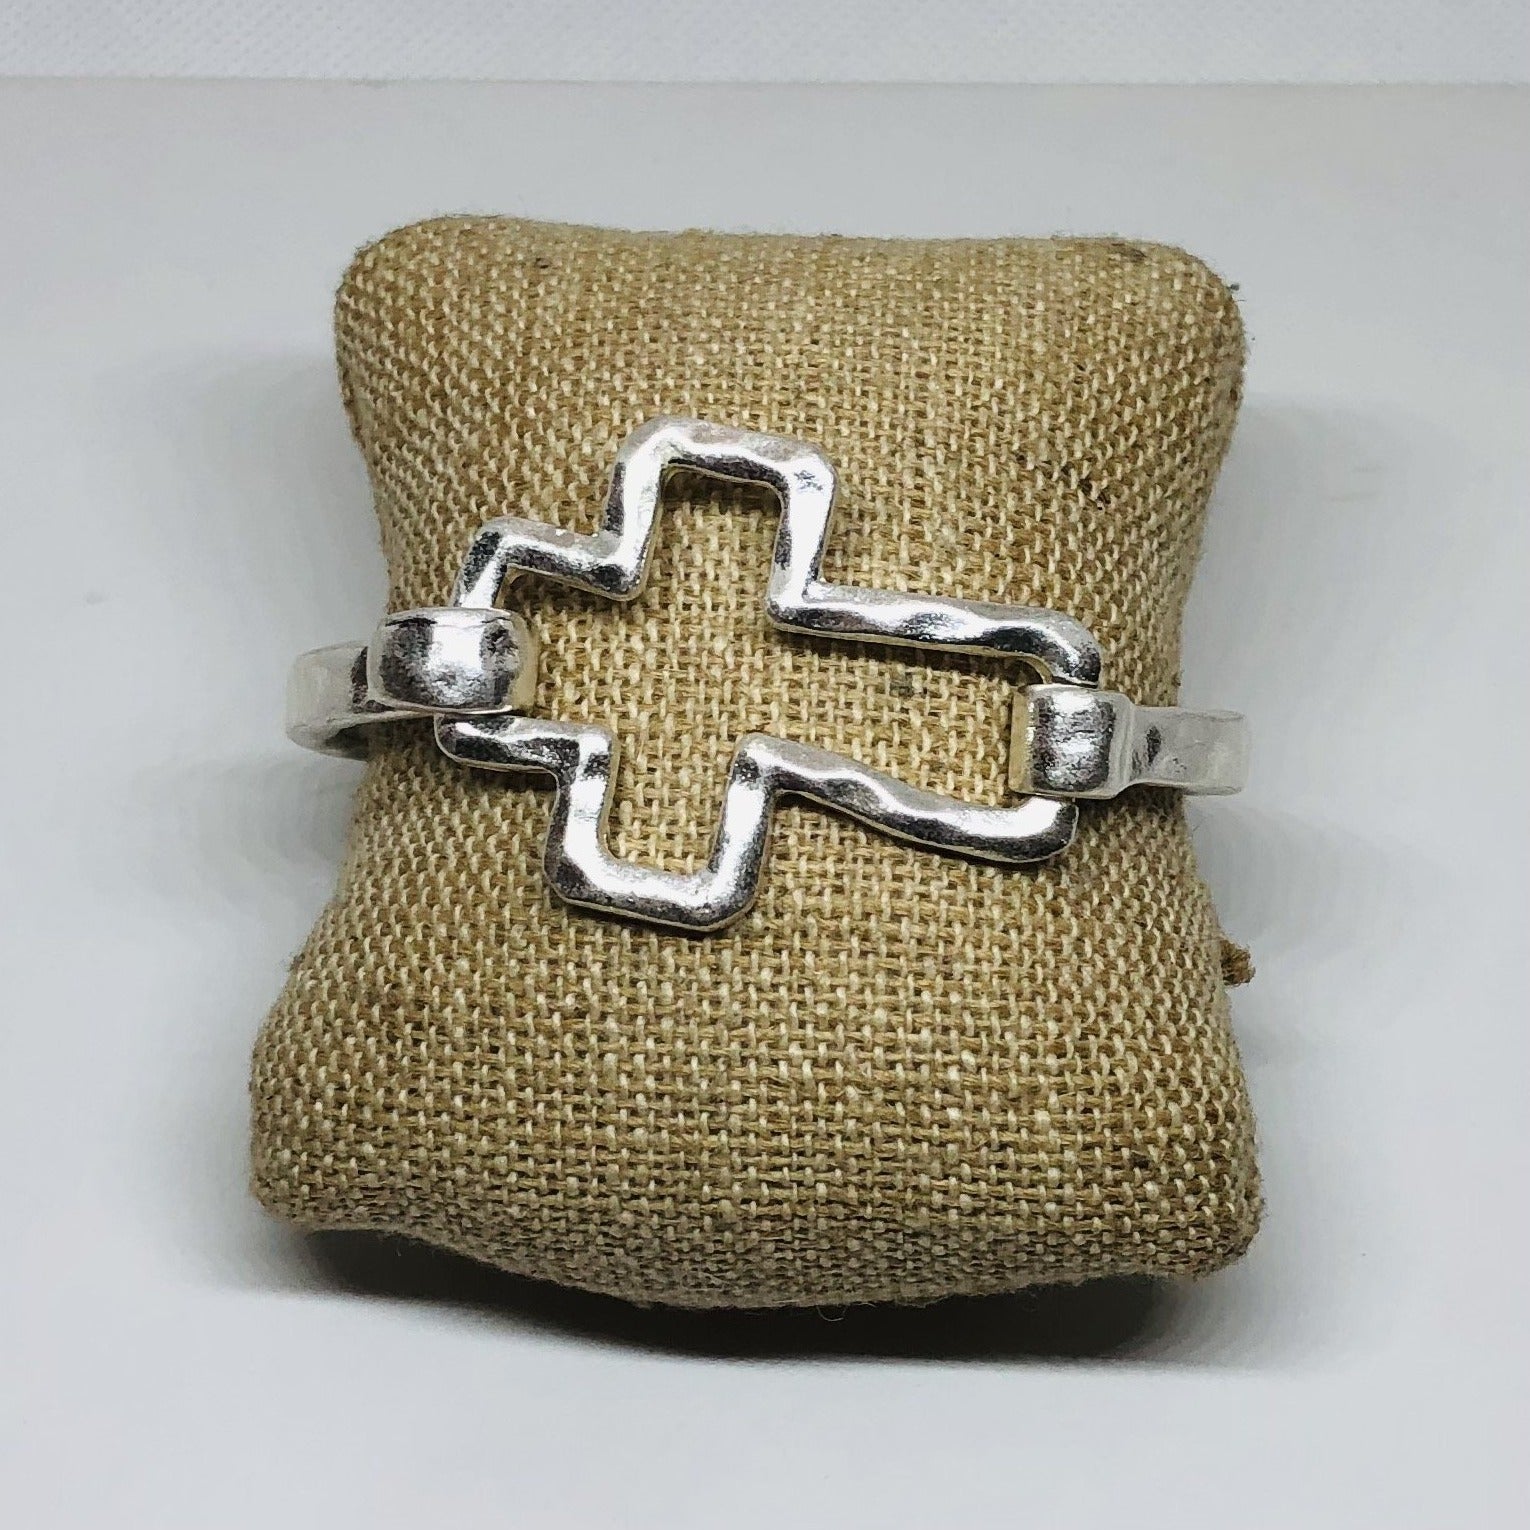 Cross Bracelet in Silver